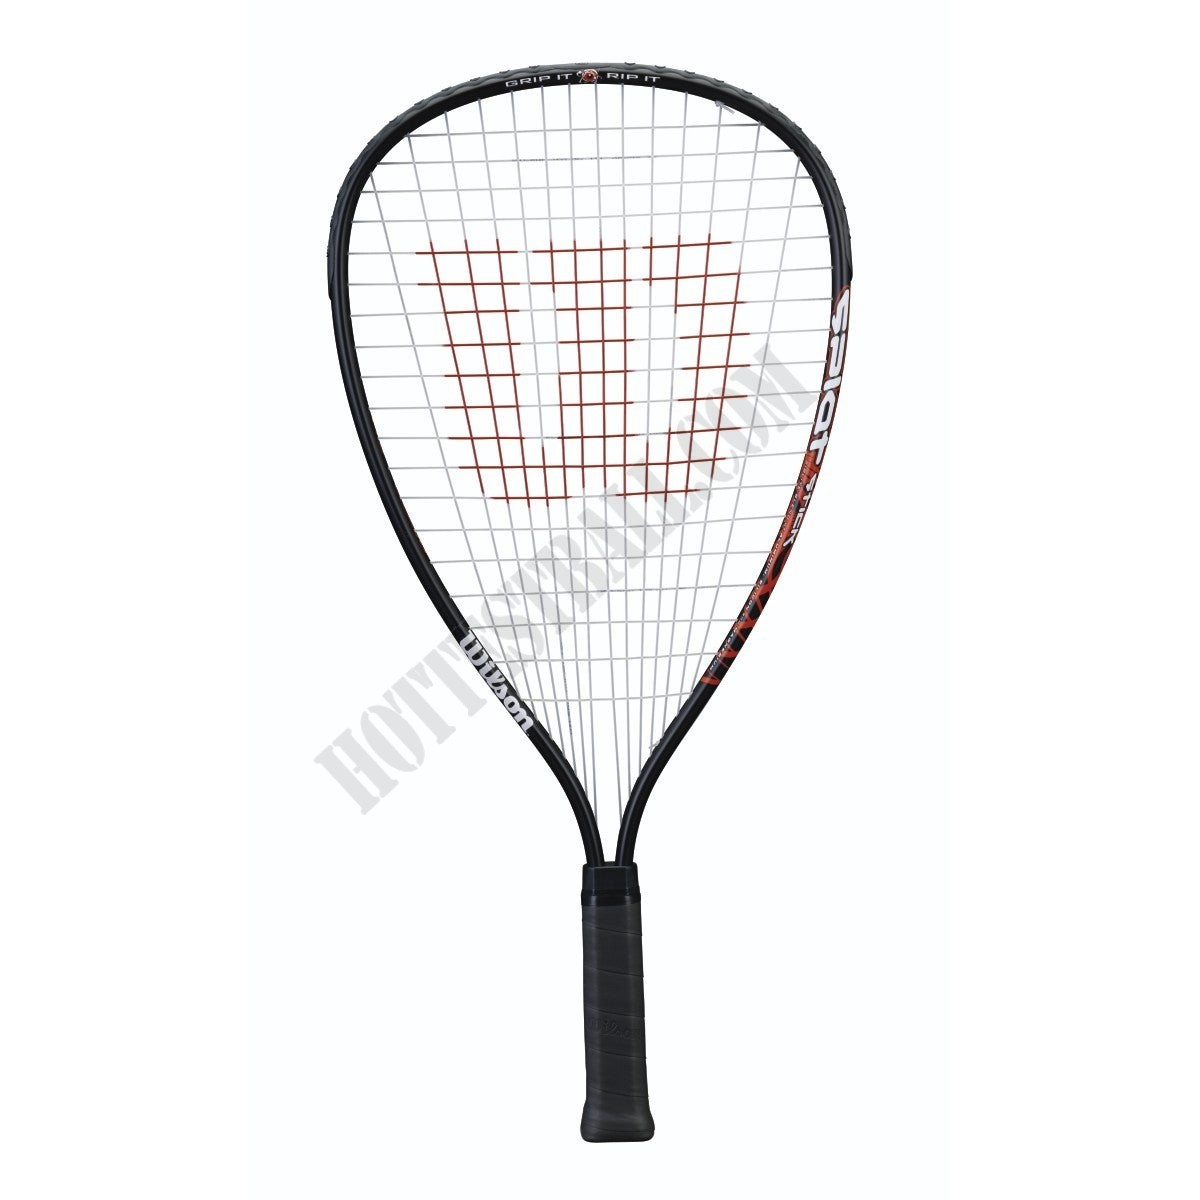 Splat Stick Racquetball Racquet - 3 7/8" (XS) Grip - Wilson Discount Store - Splat Stick Racquetball Racquet - 3 7/8" (XS) Grip - Wilson Discount Store